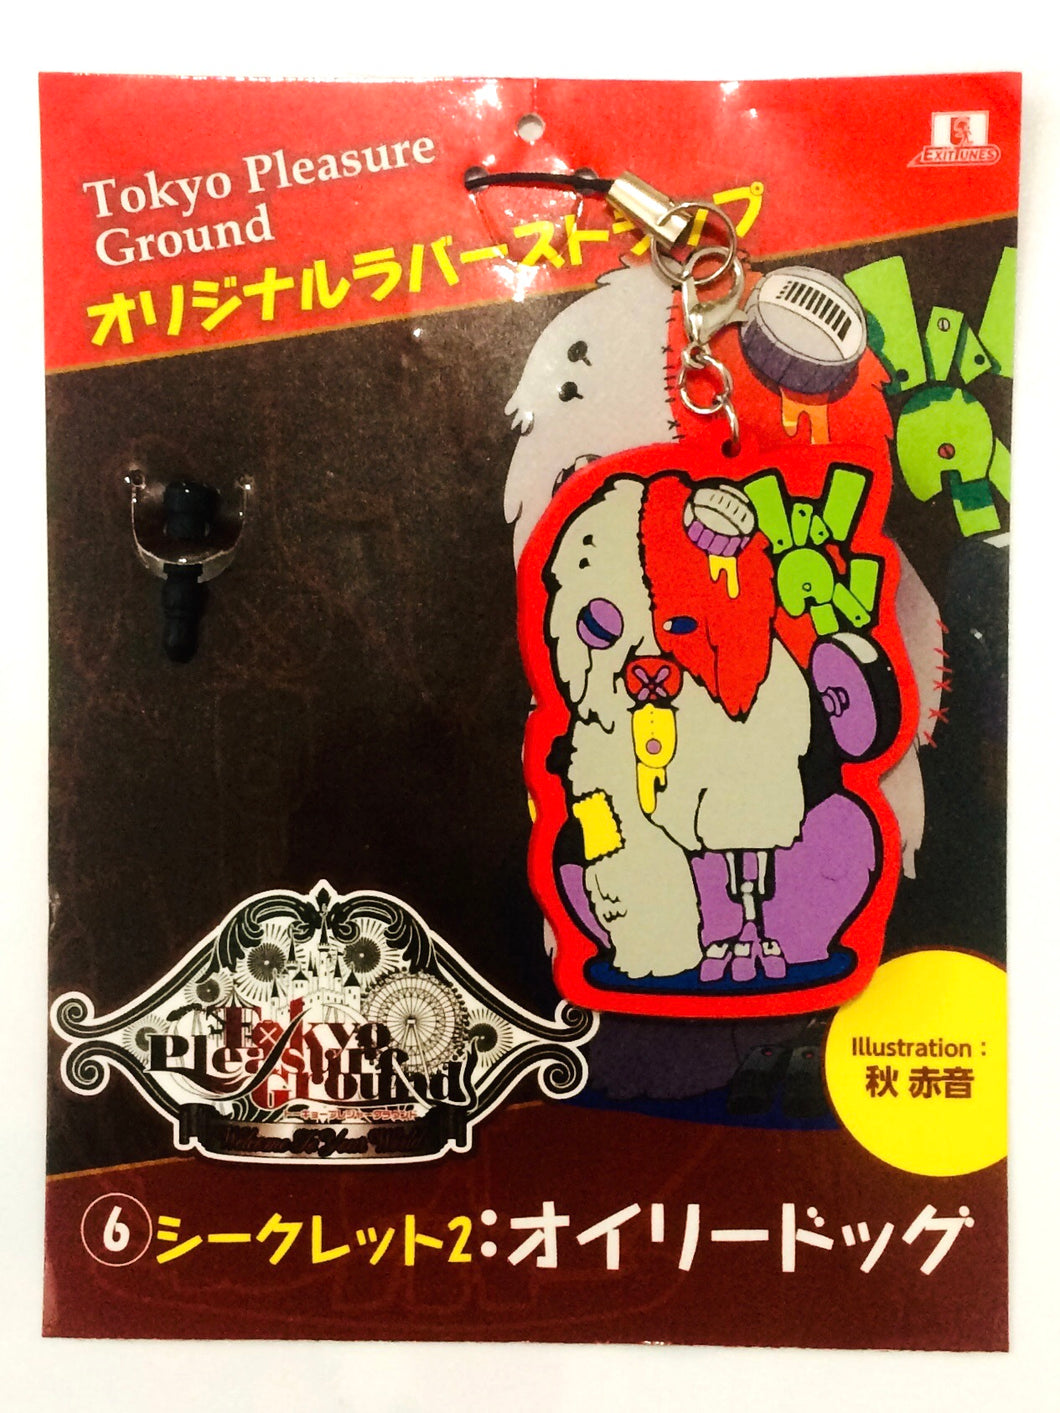 Akiakane - Touyu - Vocaloid - Tokyo Pleasure Ground - Oily Dog - Rubber Strap - (6) Secret